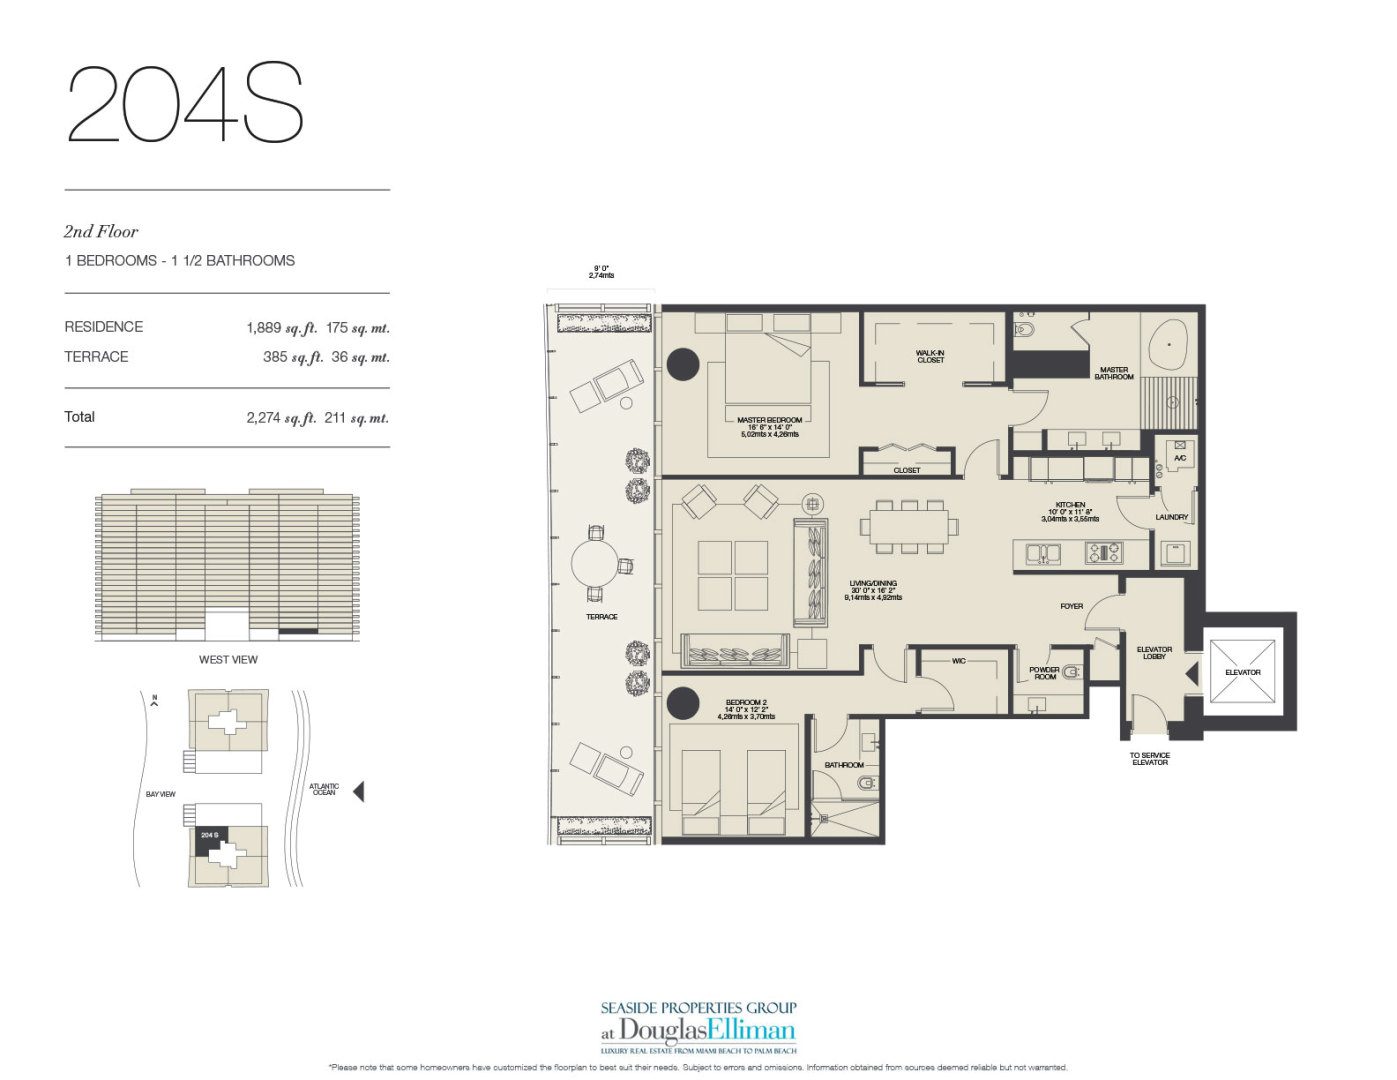 The 204S Floorplan for Oceana Bal Harbour, Luxury Oceanfront Condos in Bal Harbour, Florida 33154